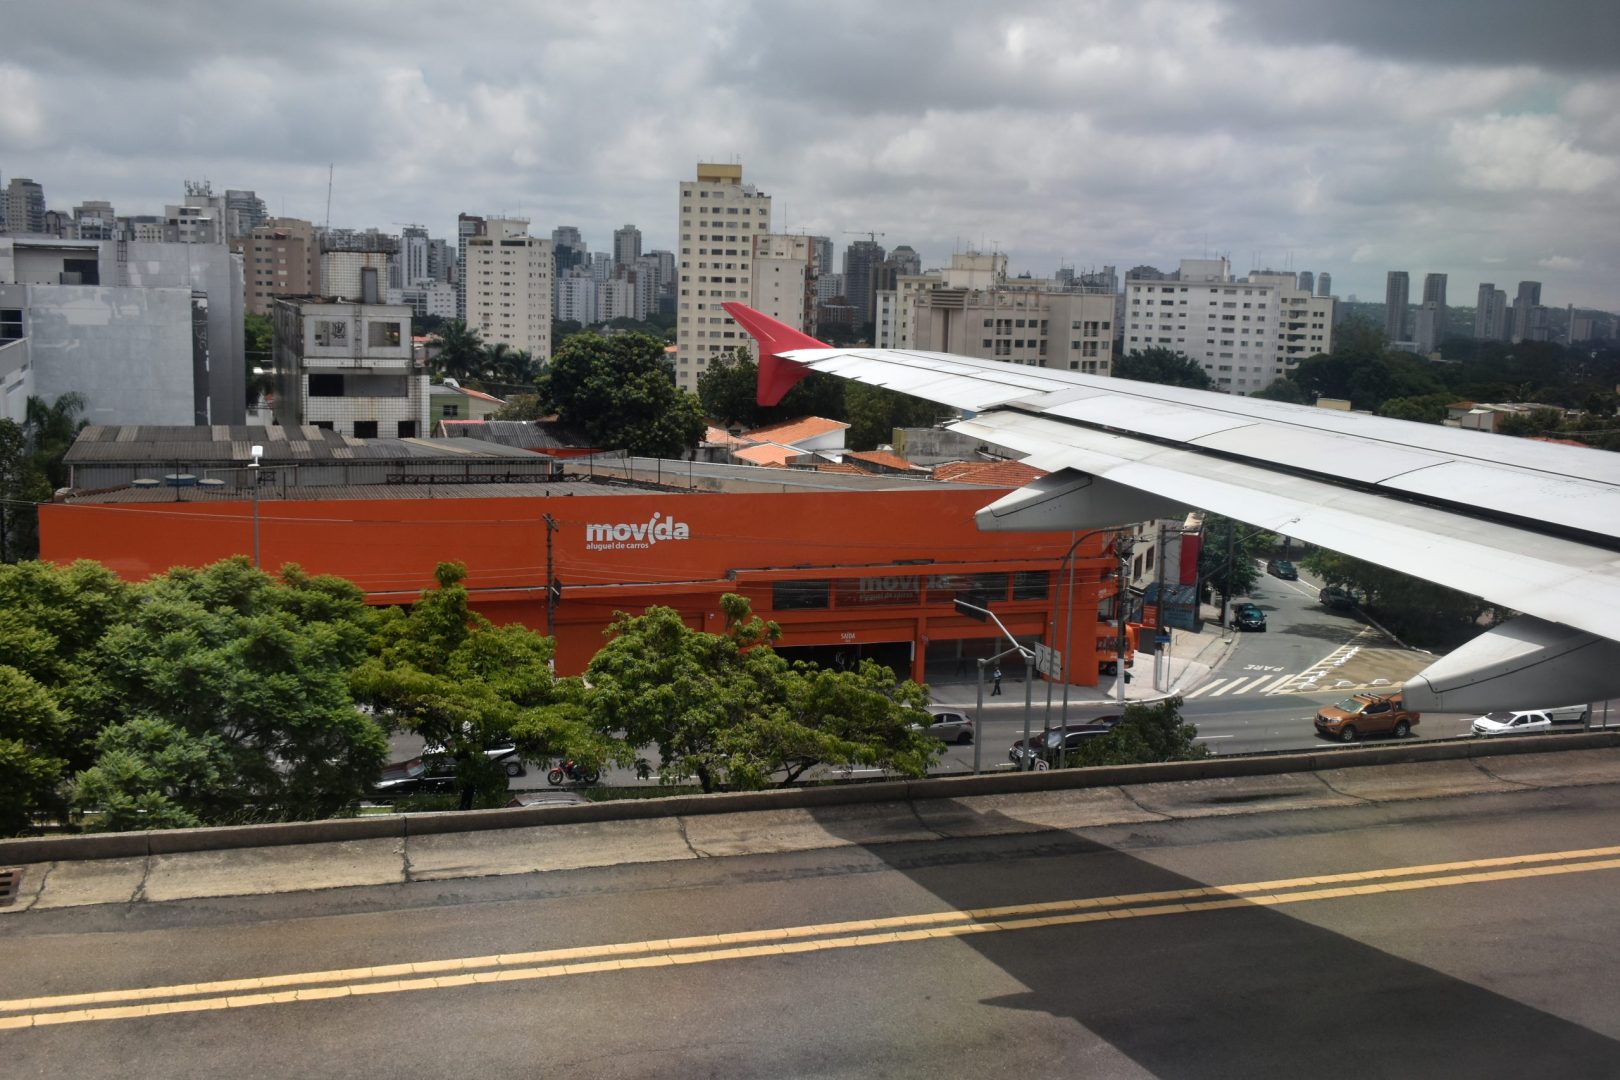 São Paulo/Congonhas–Deputado Freitas Nobre Airport